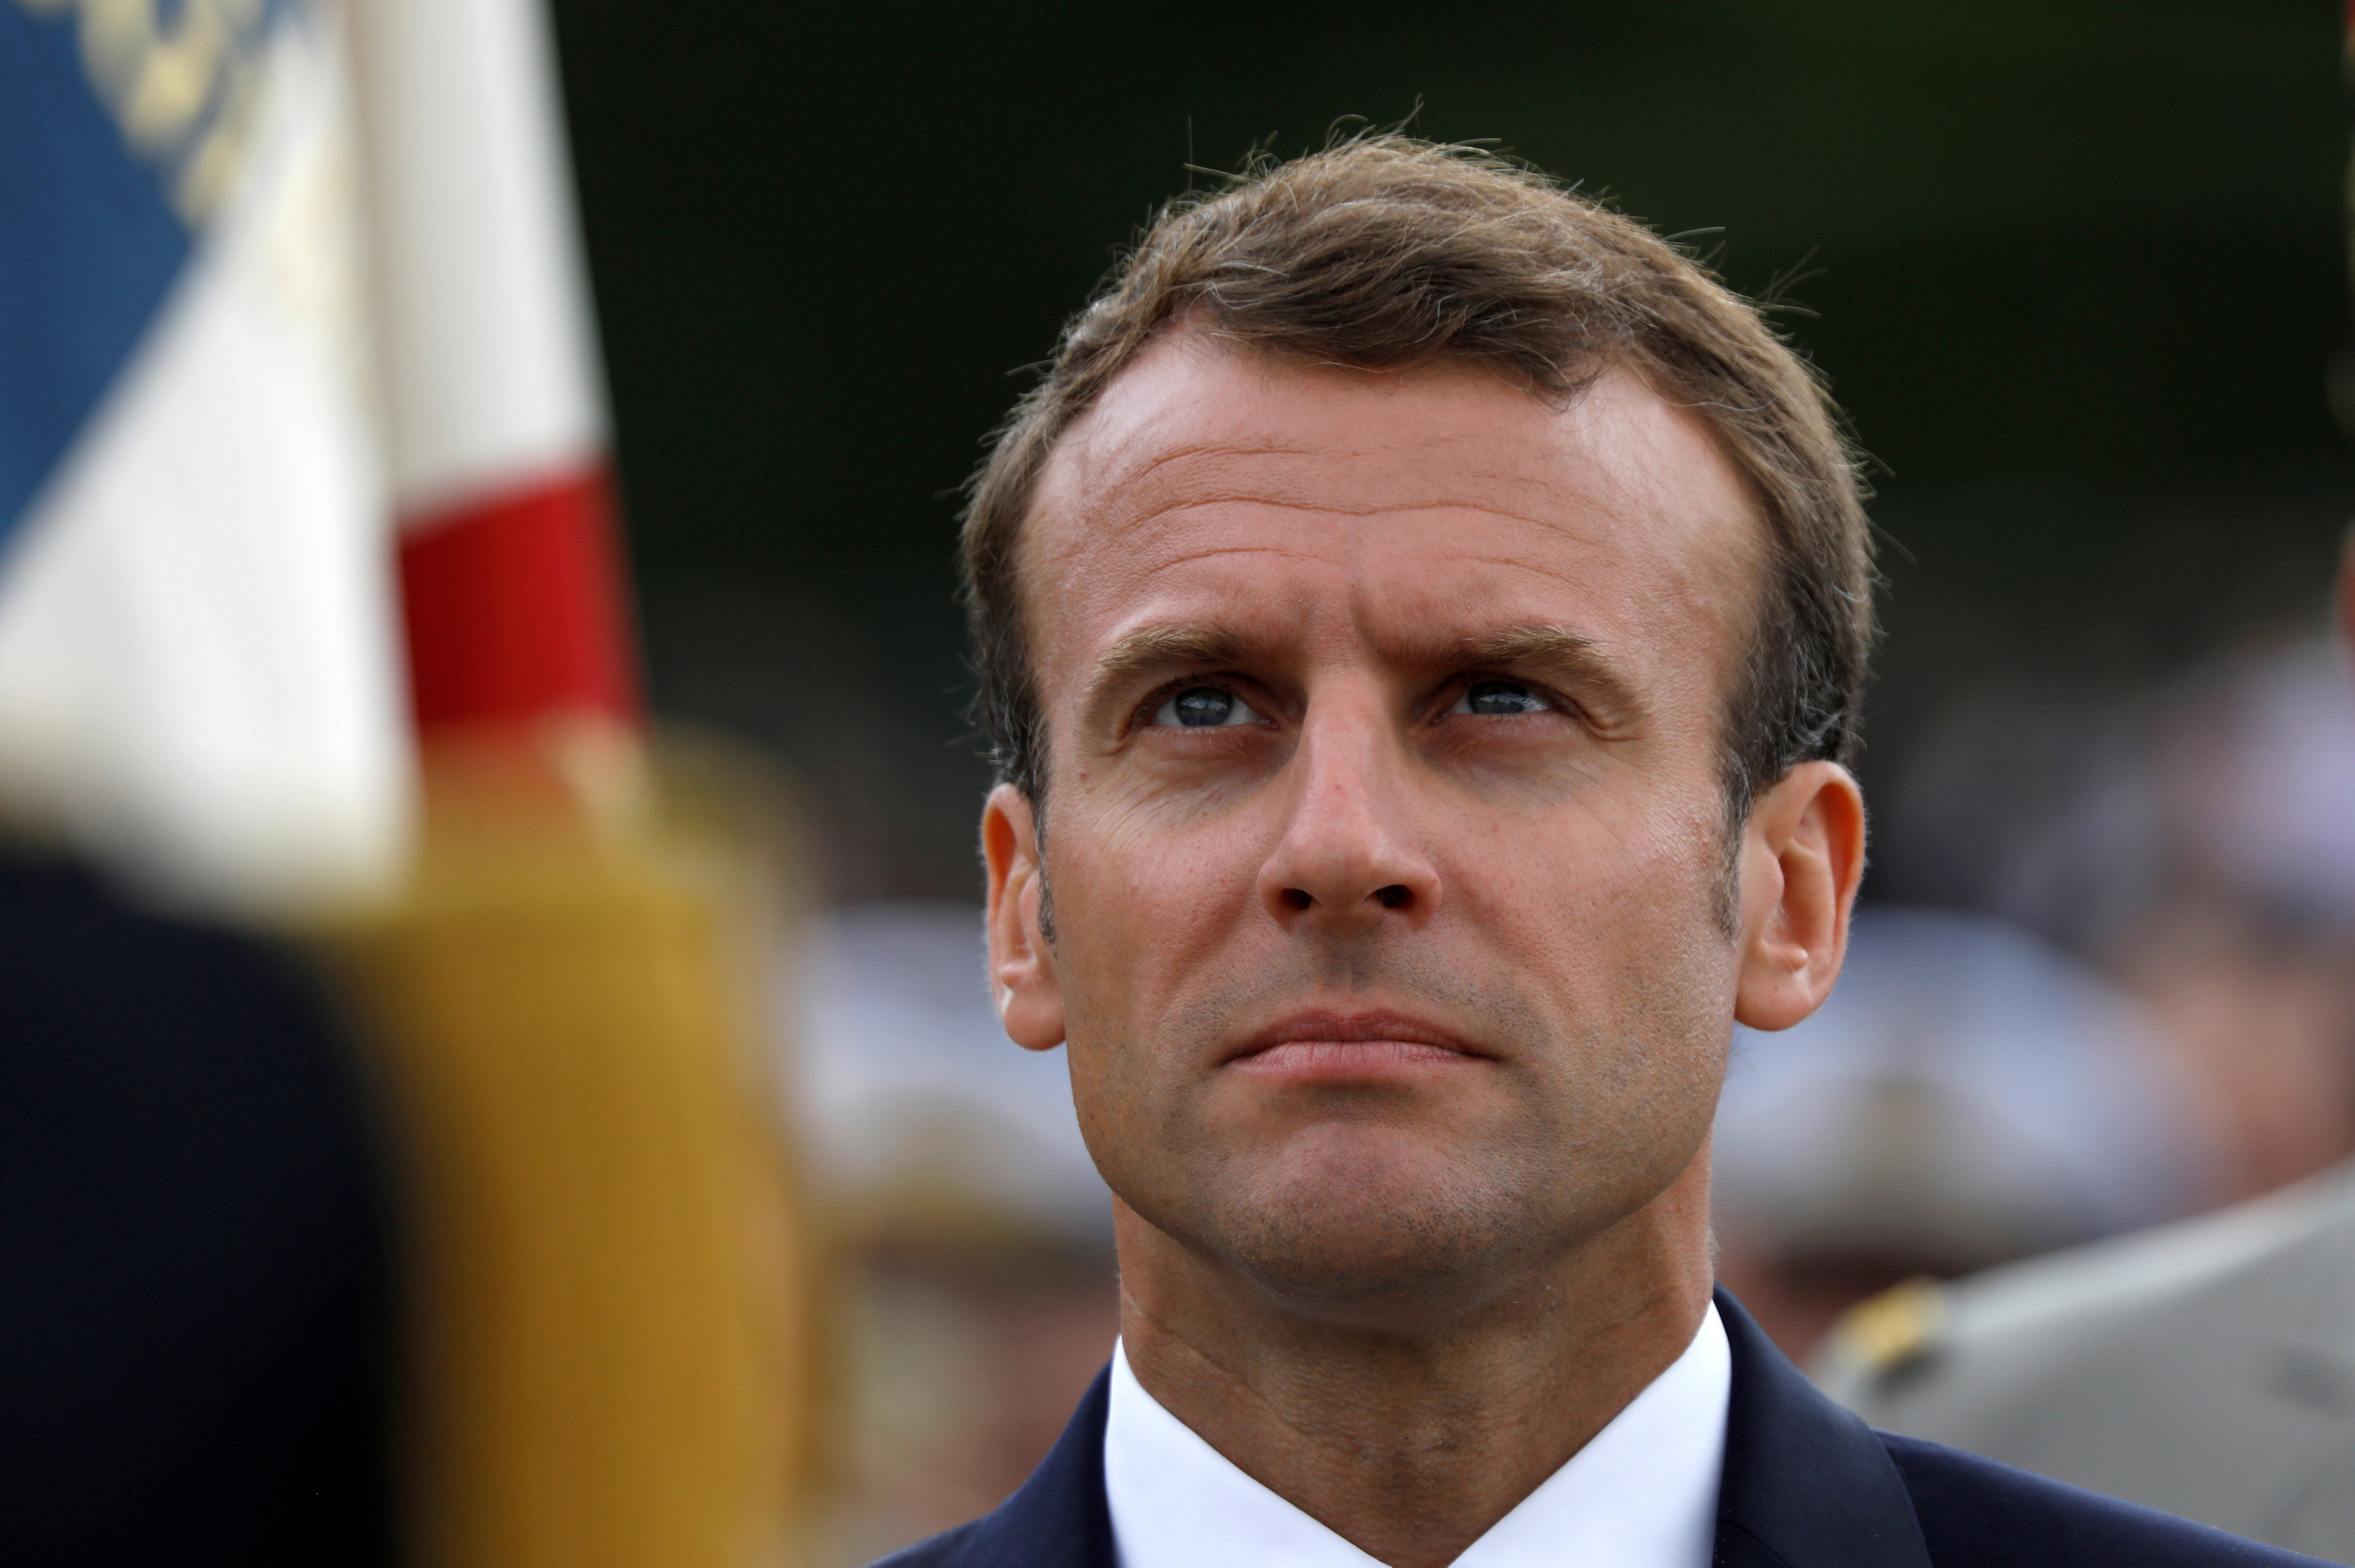 Macron busca estabilidad mientras aumentan los desafíos en Francia